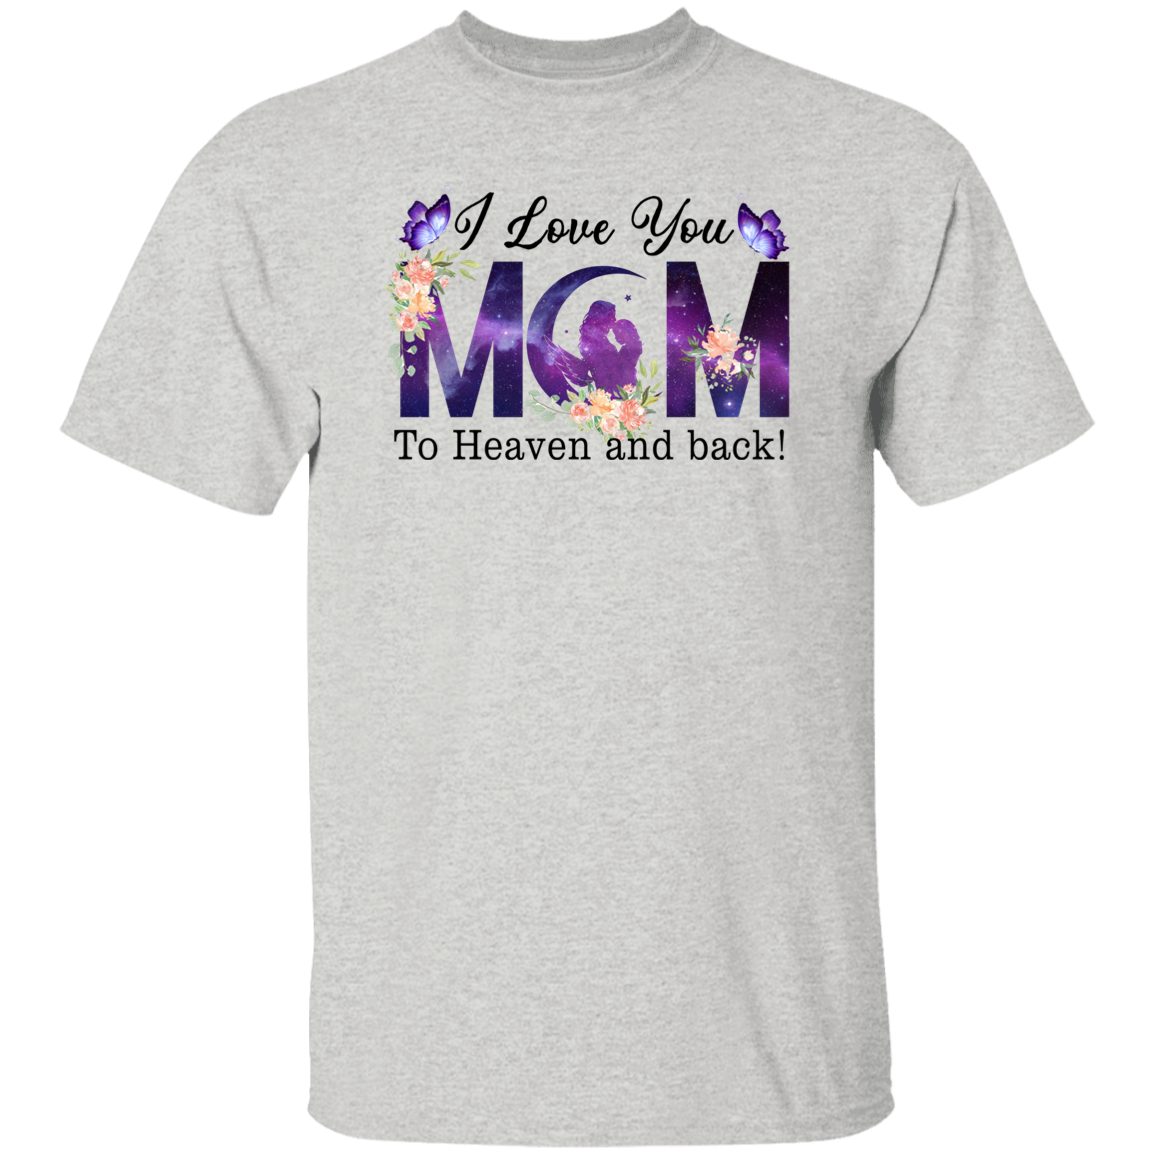 Mom Memorial  T-Shirt